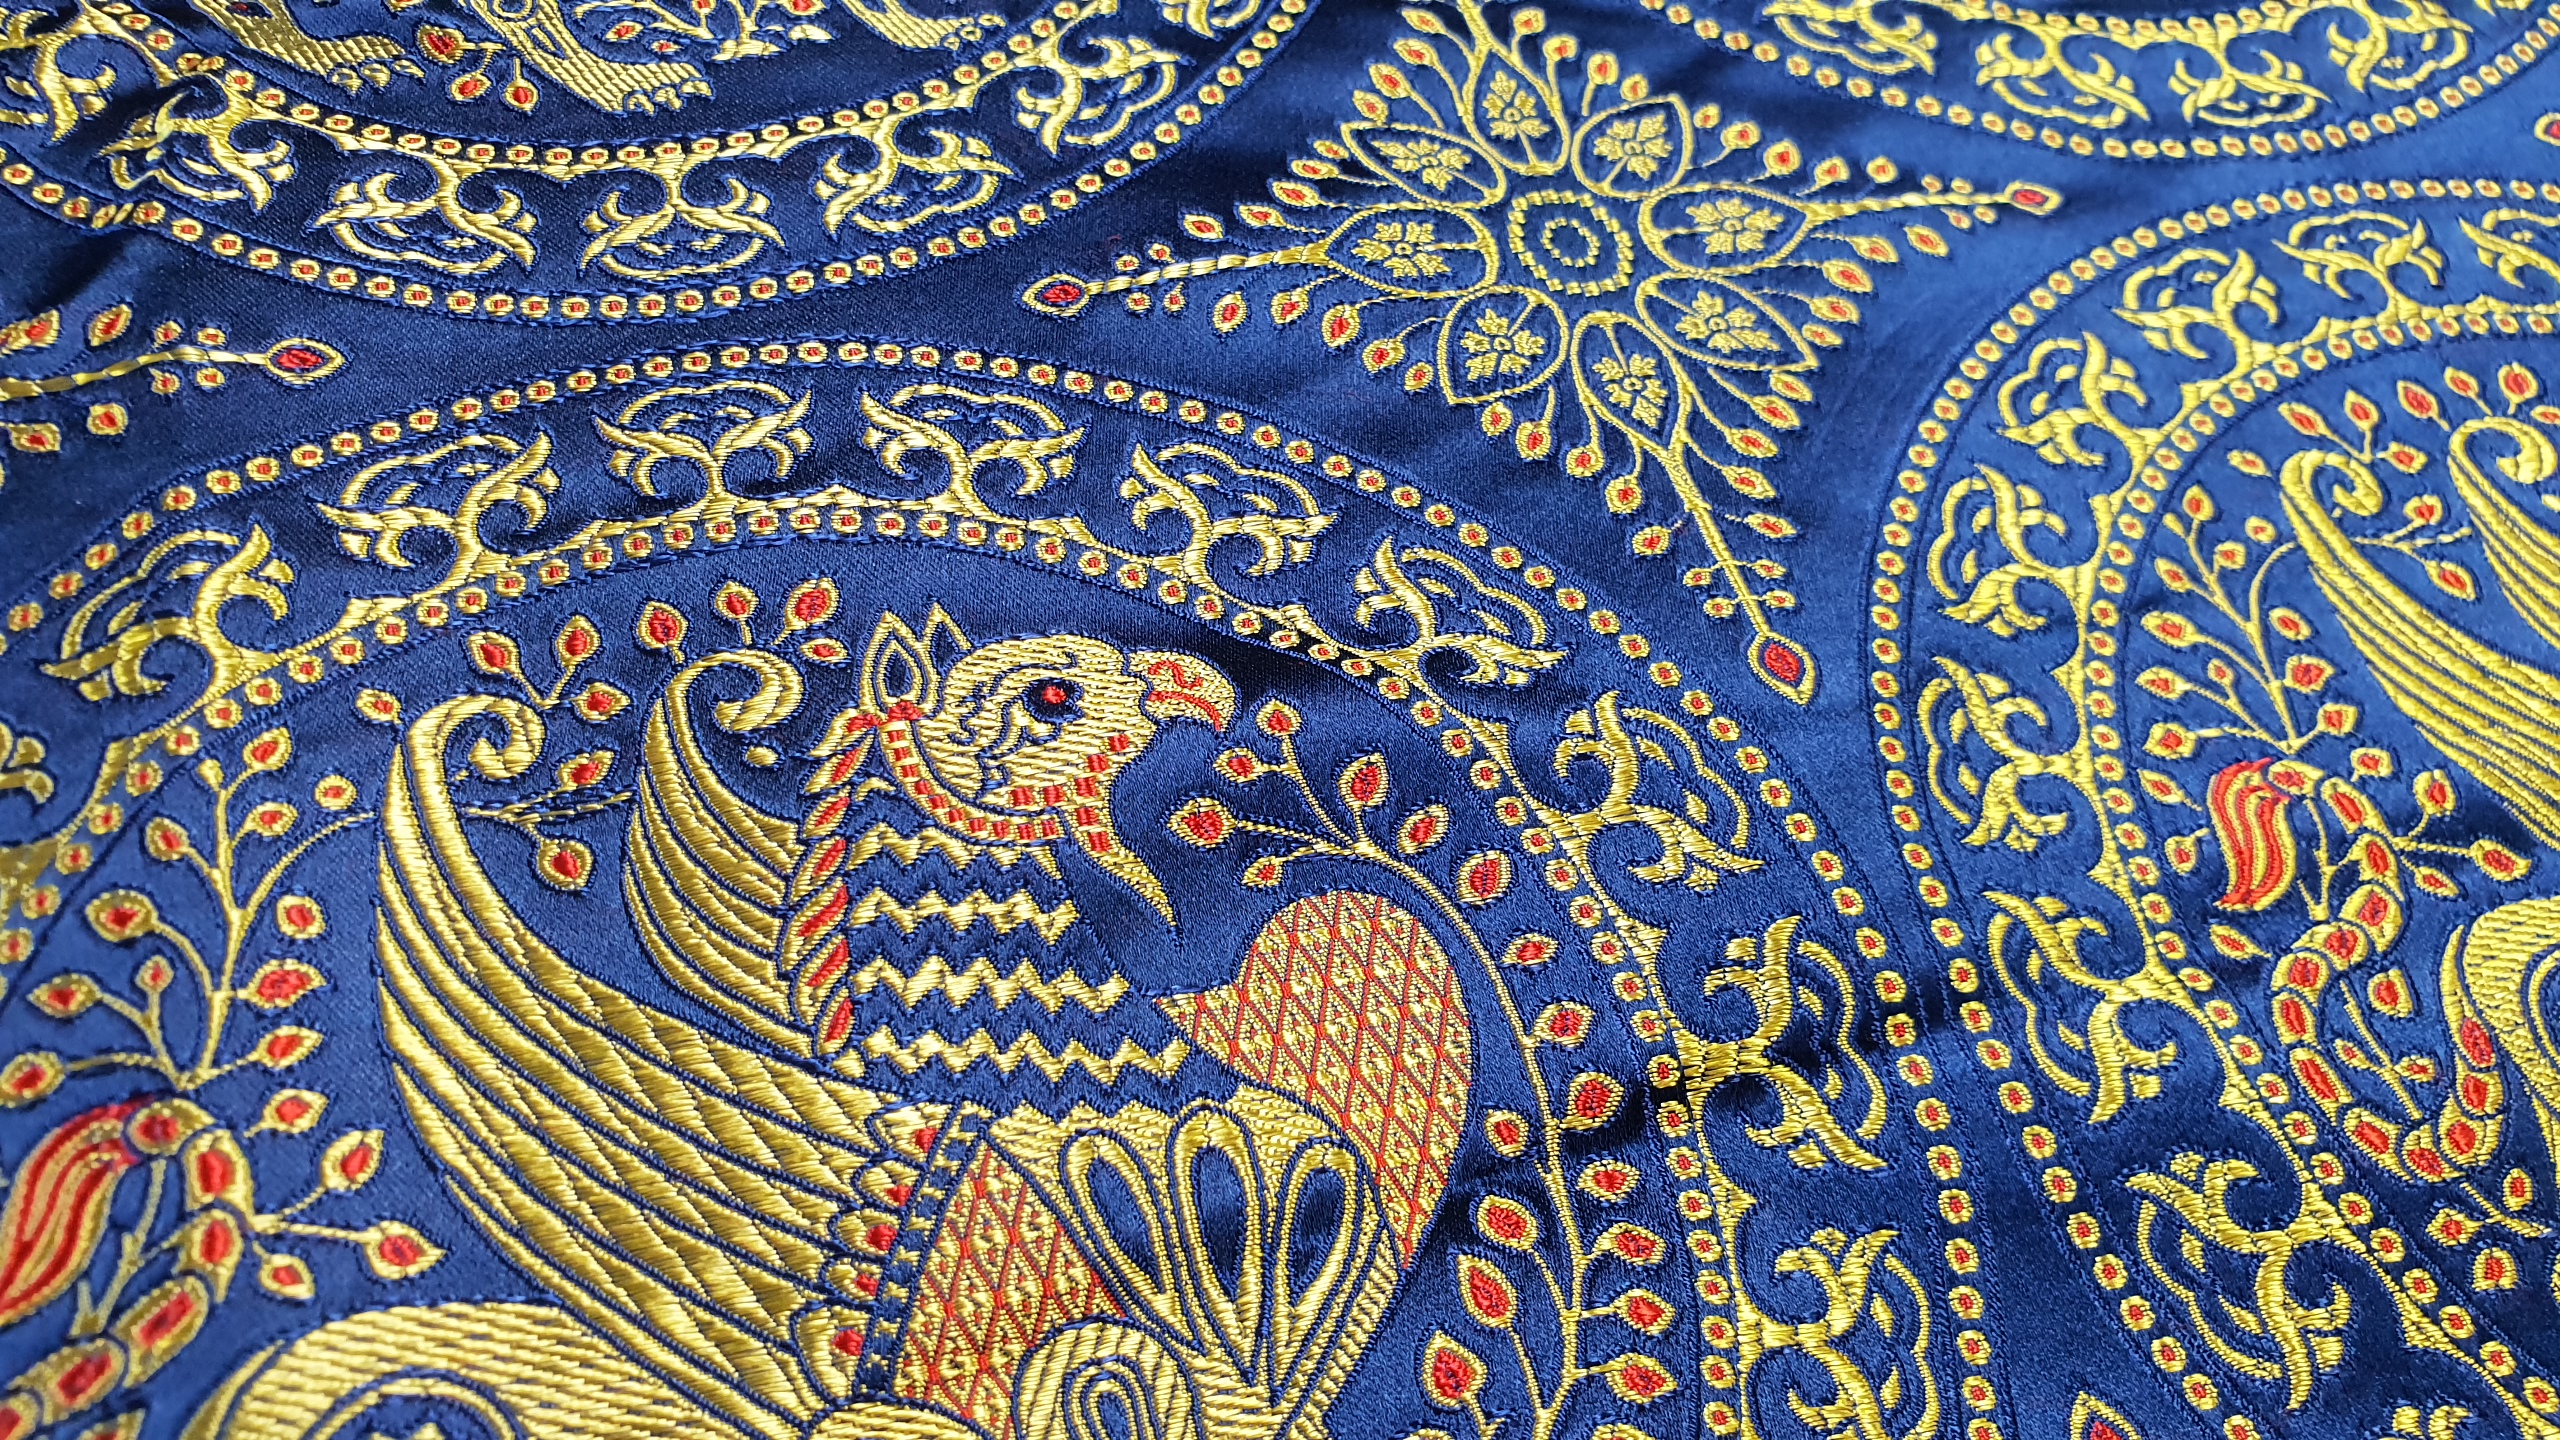 Silk brocade- griffin on blue 7-12th century